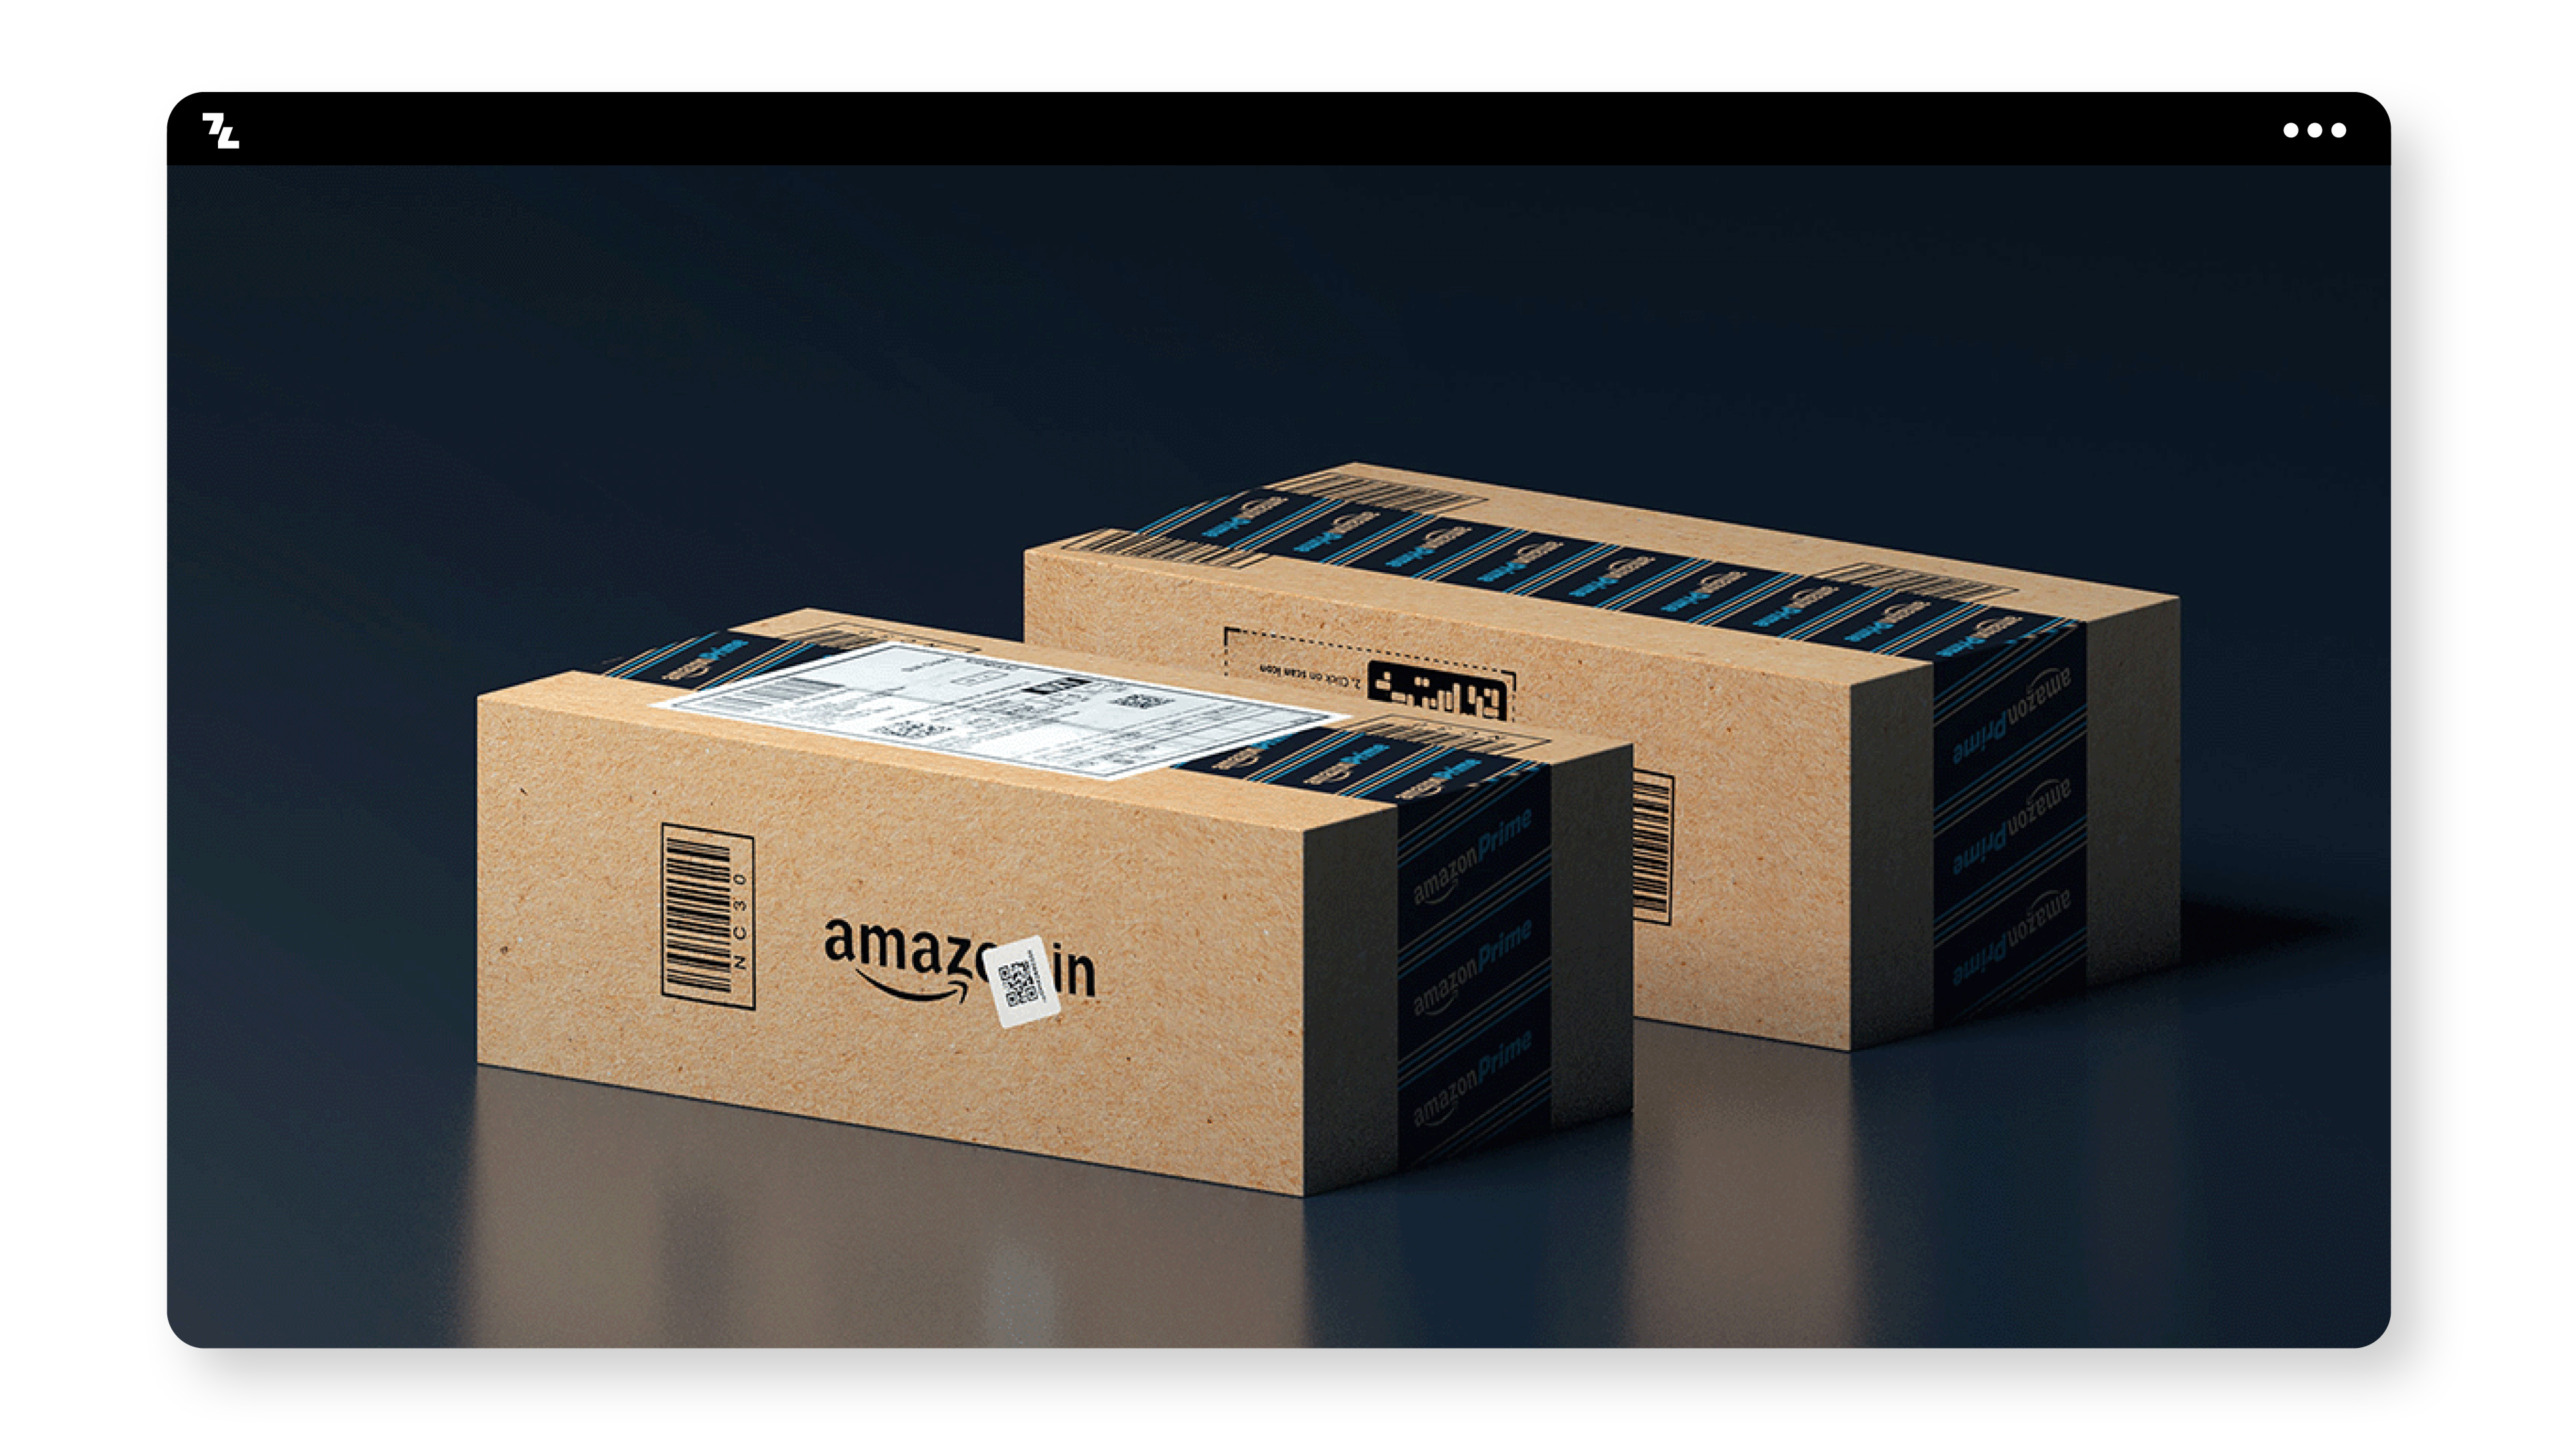 Zwei Amazon-Boxen auf schwarzem Hintergrund mit Branding.